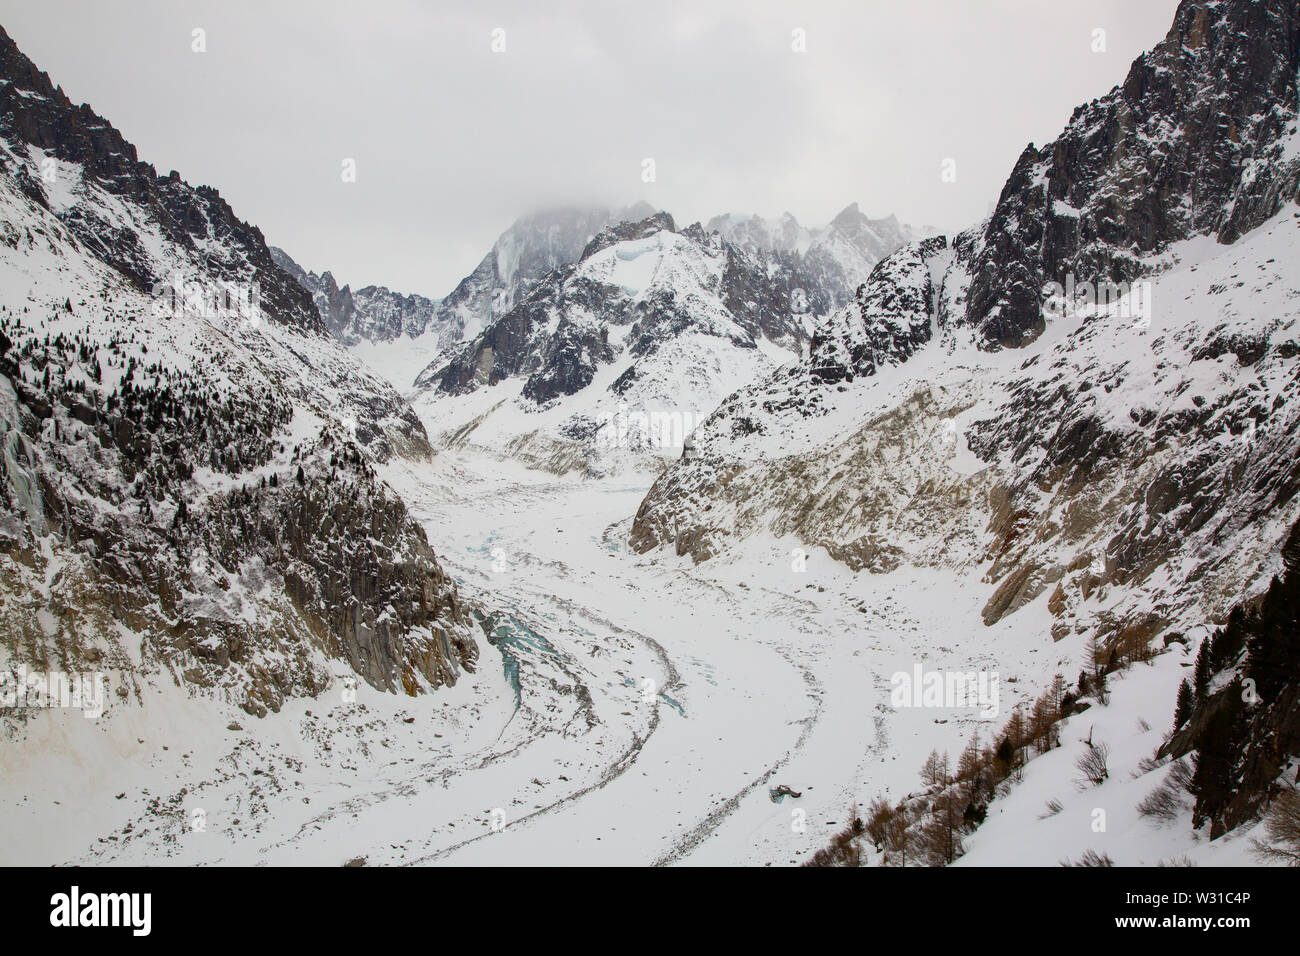 Das Mer de Glace - Meer Eis eines Gletschers befindet sich an den nördlichen Hängen des Mont Blanc Massiv, in den Französischen Alpen. Stockfoto